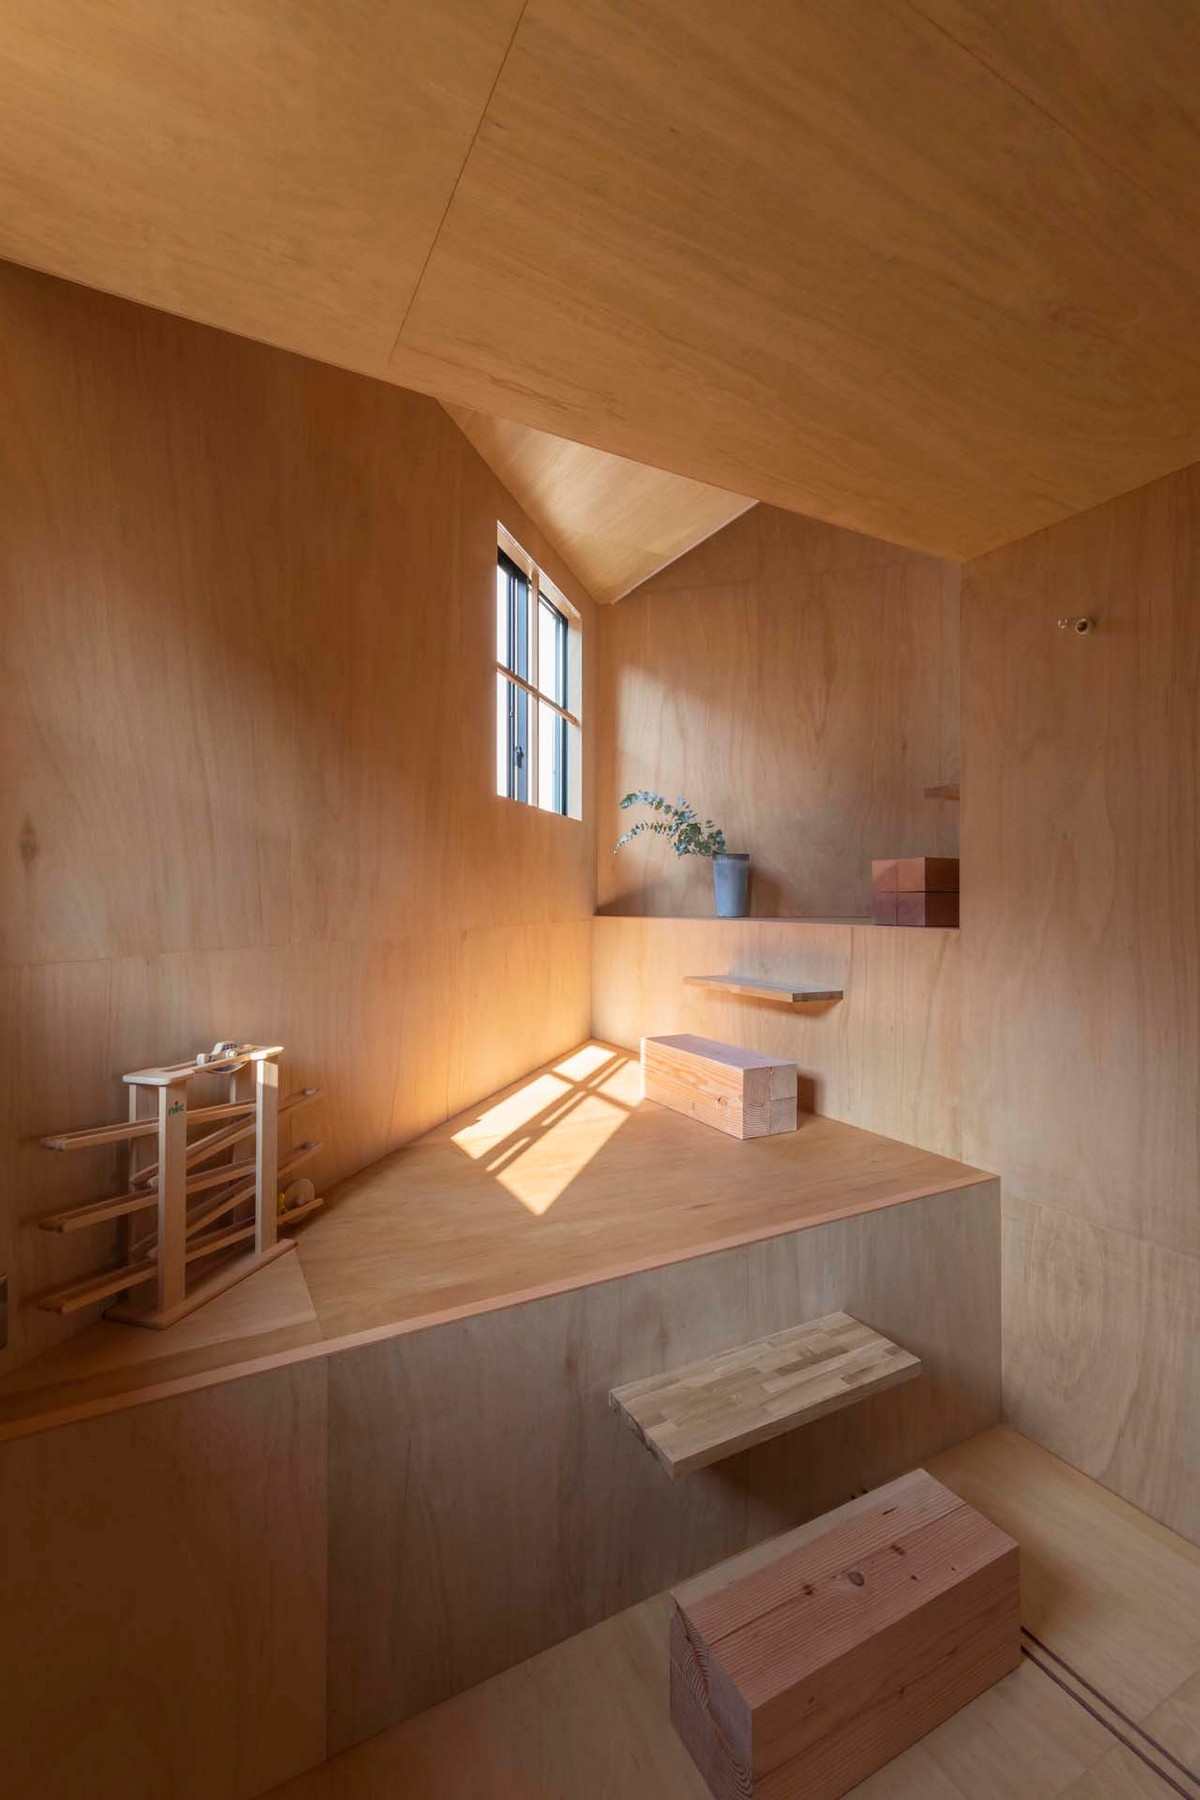 Небольшой дом с разными уровнями в Японии чтобы, использовать, разных, которые, этажей, внутри, между, создать, композицию, дизайн, соответствии, архитекторы, Такацуки, впервые, уровни, этого, встретиться, пространства, небольшого, жизнь